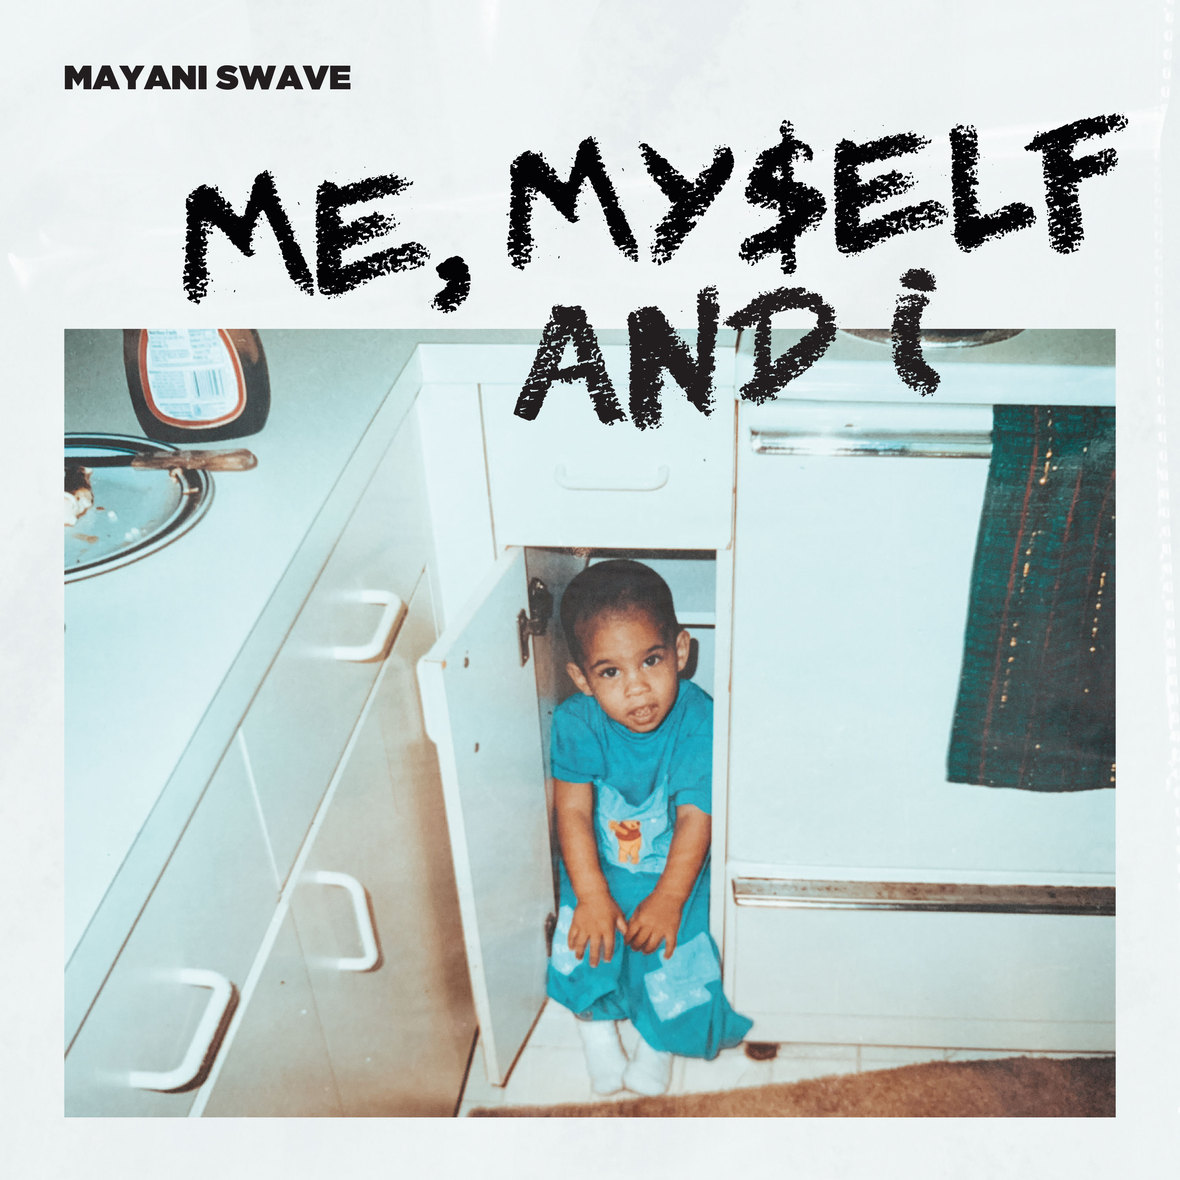 mayani-swave me -myself-and-i 3000x3000px julio2020